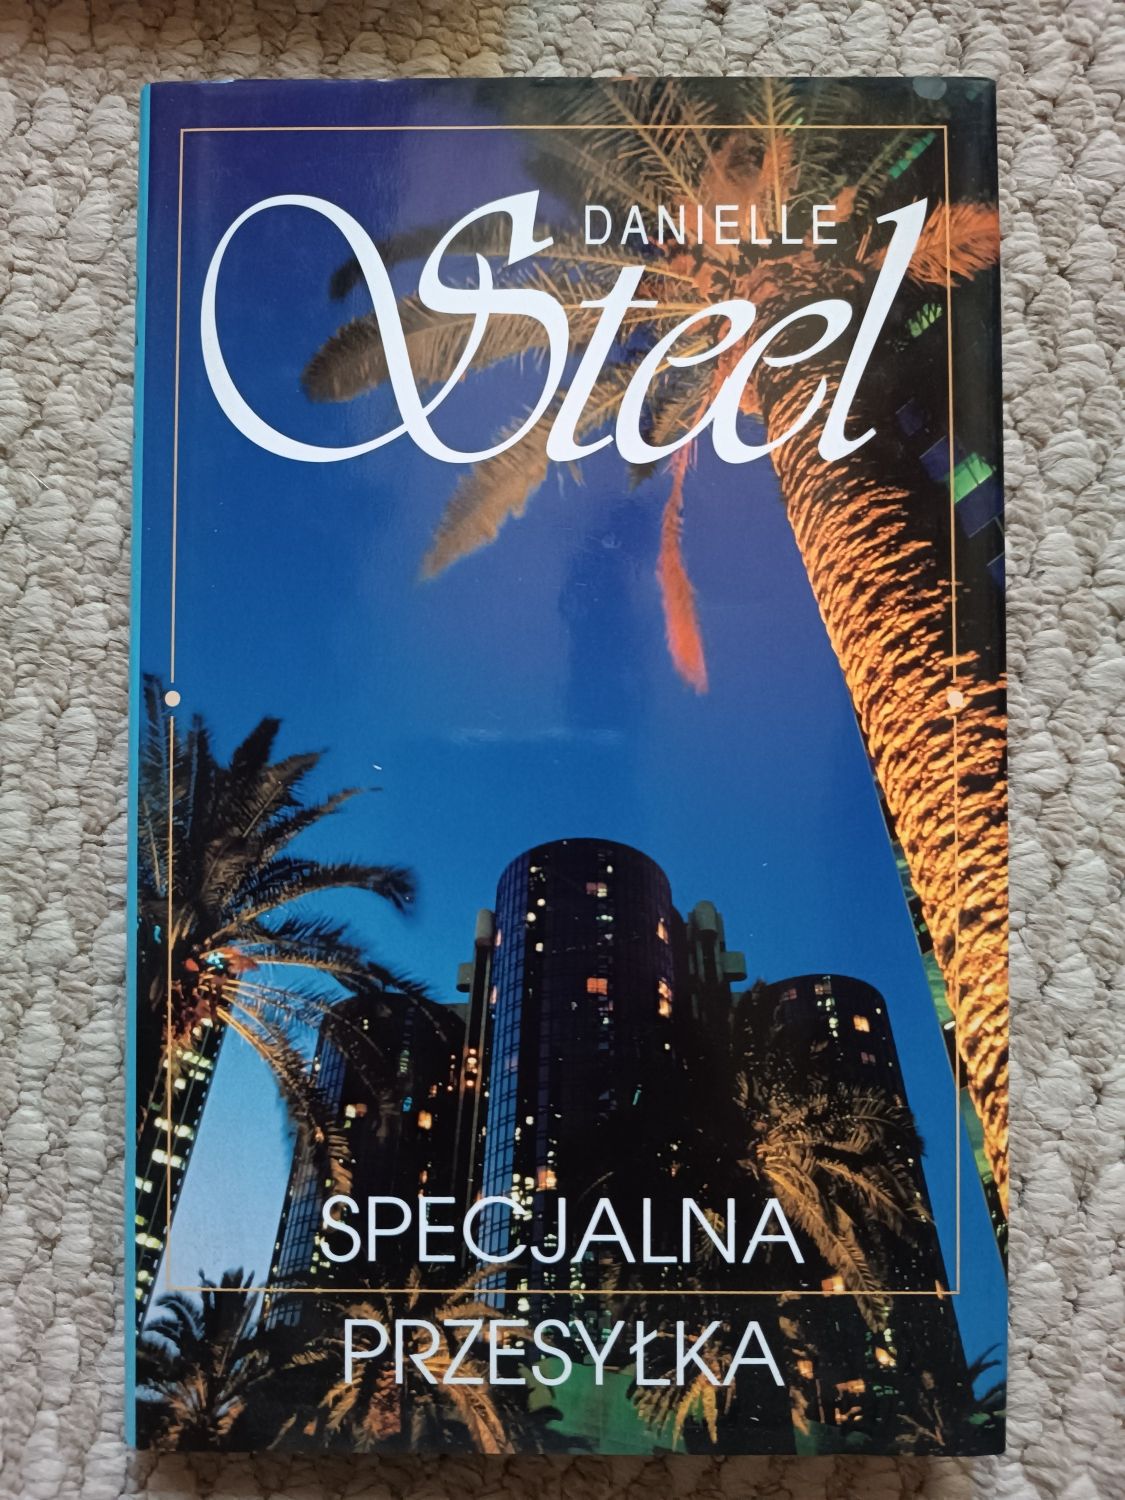 Daniele Steel "Specjalna przesyłka"